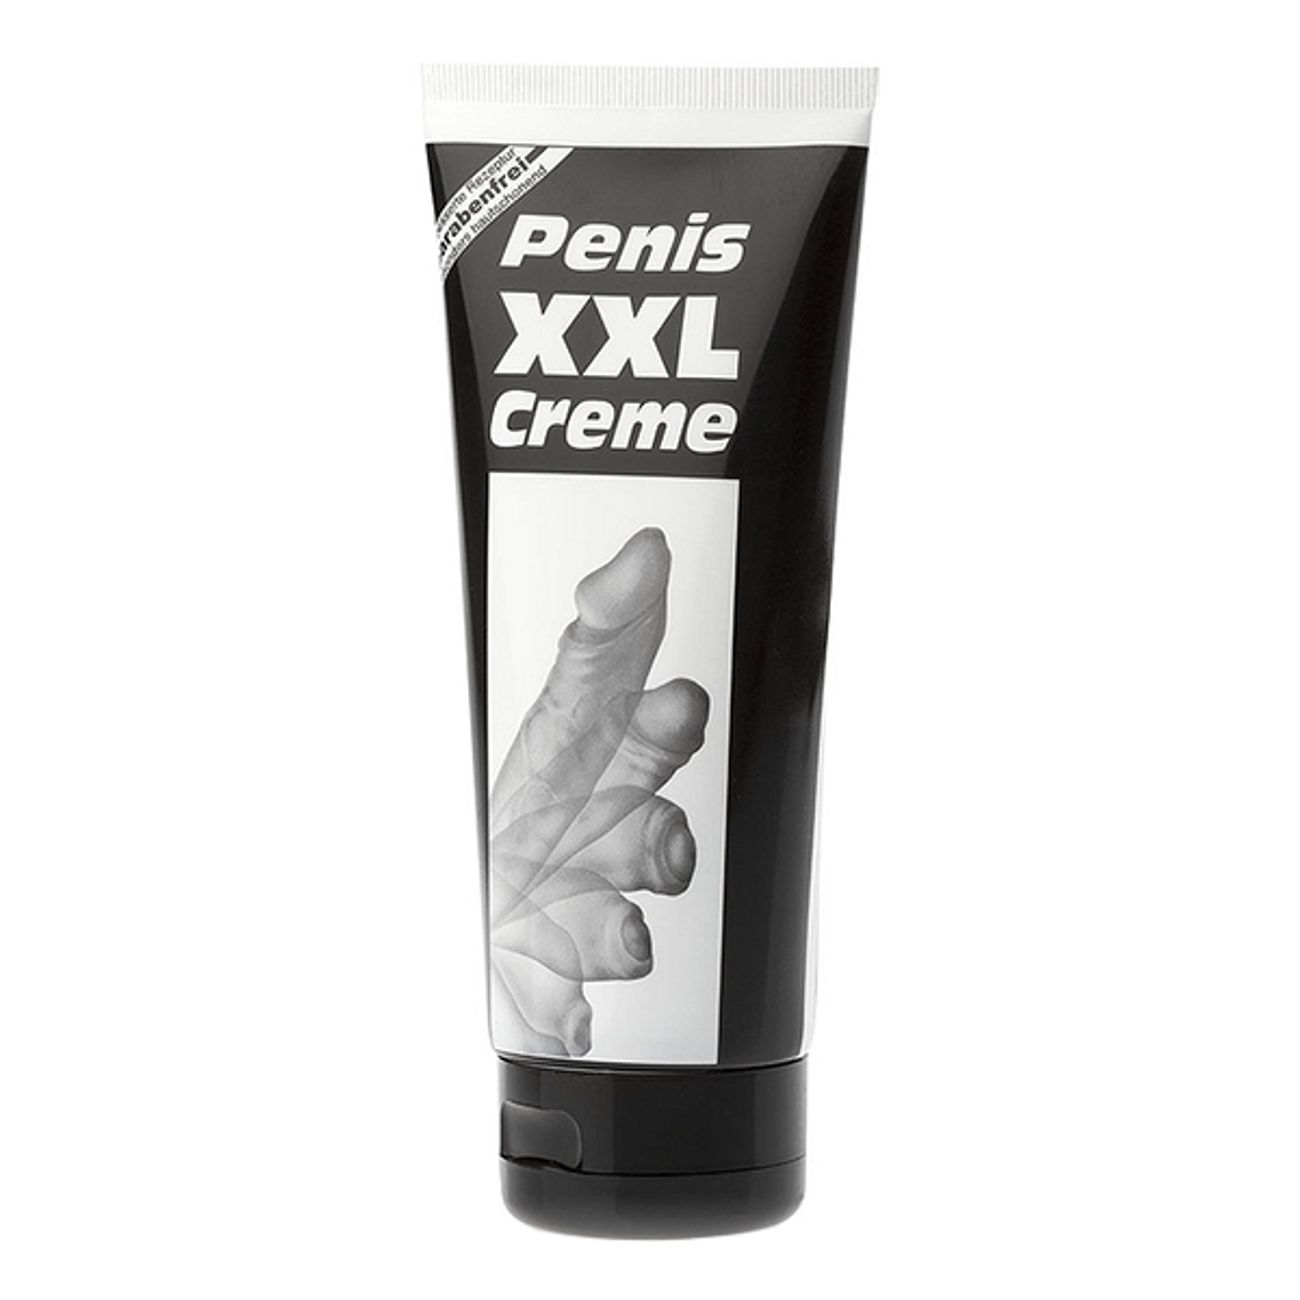 penis-xxl-creme-2